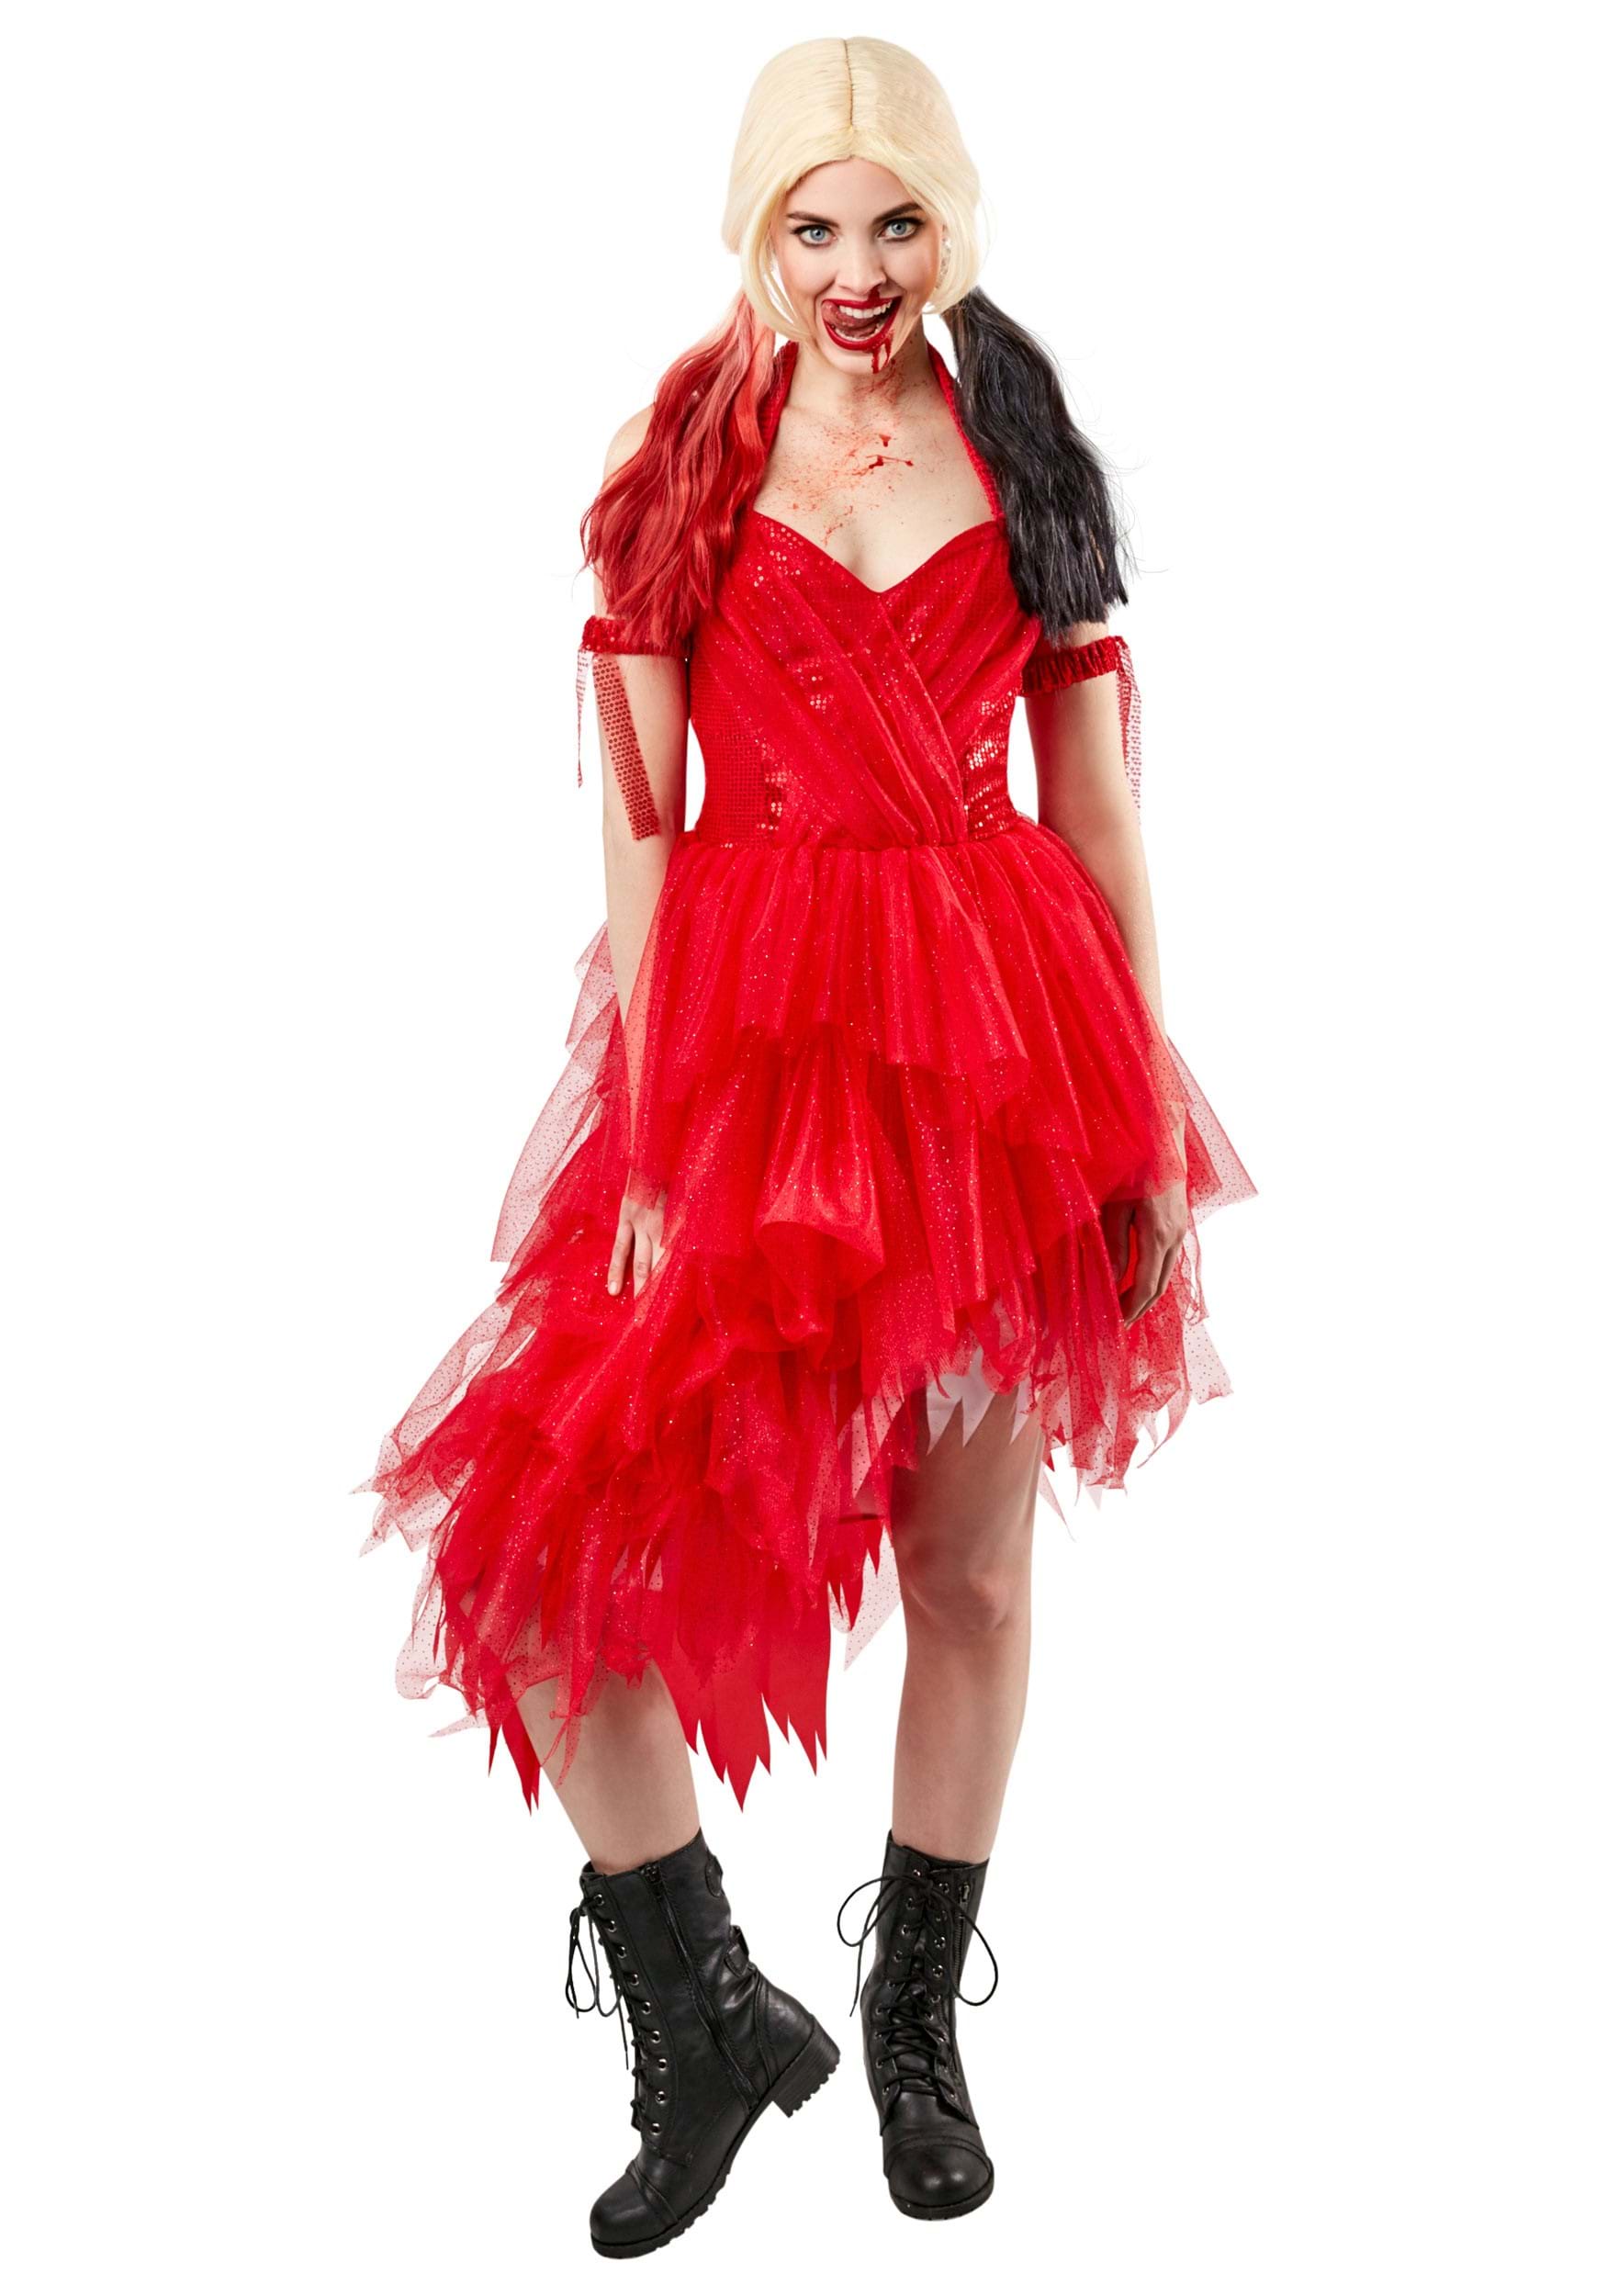 Harley Quinn Suicide Squad 2 Disfraz de vestido rojo Multicolor Colombia